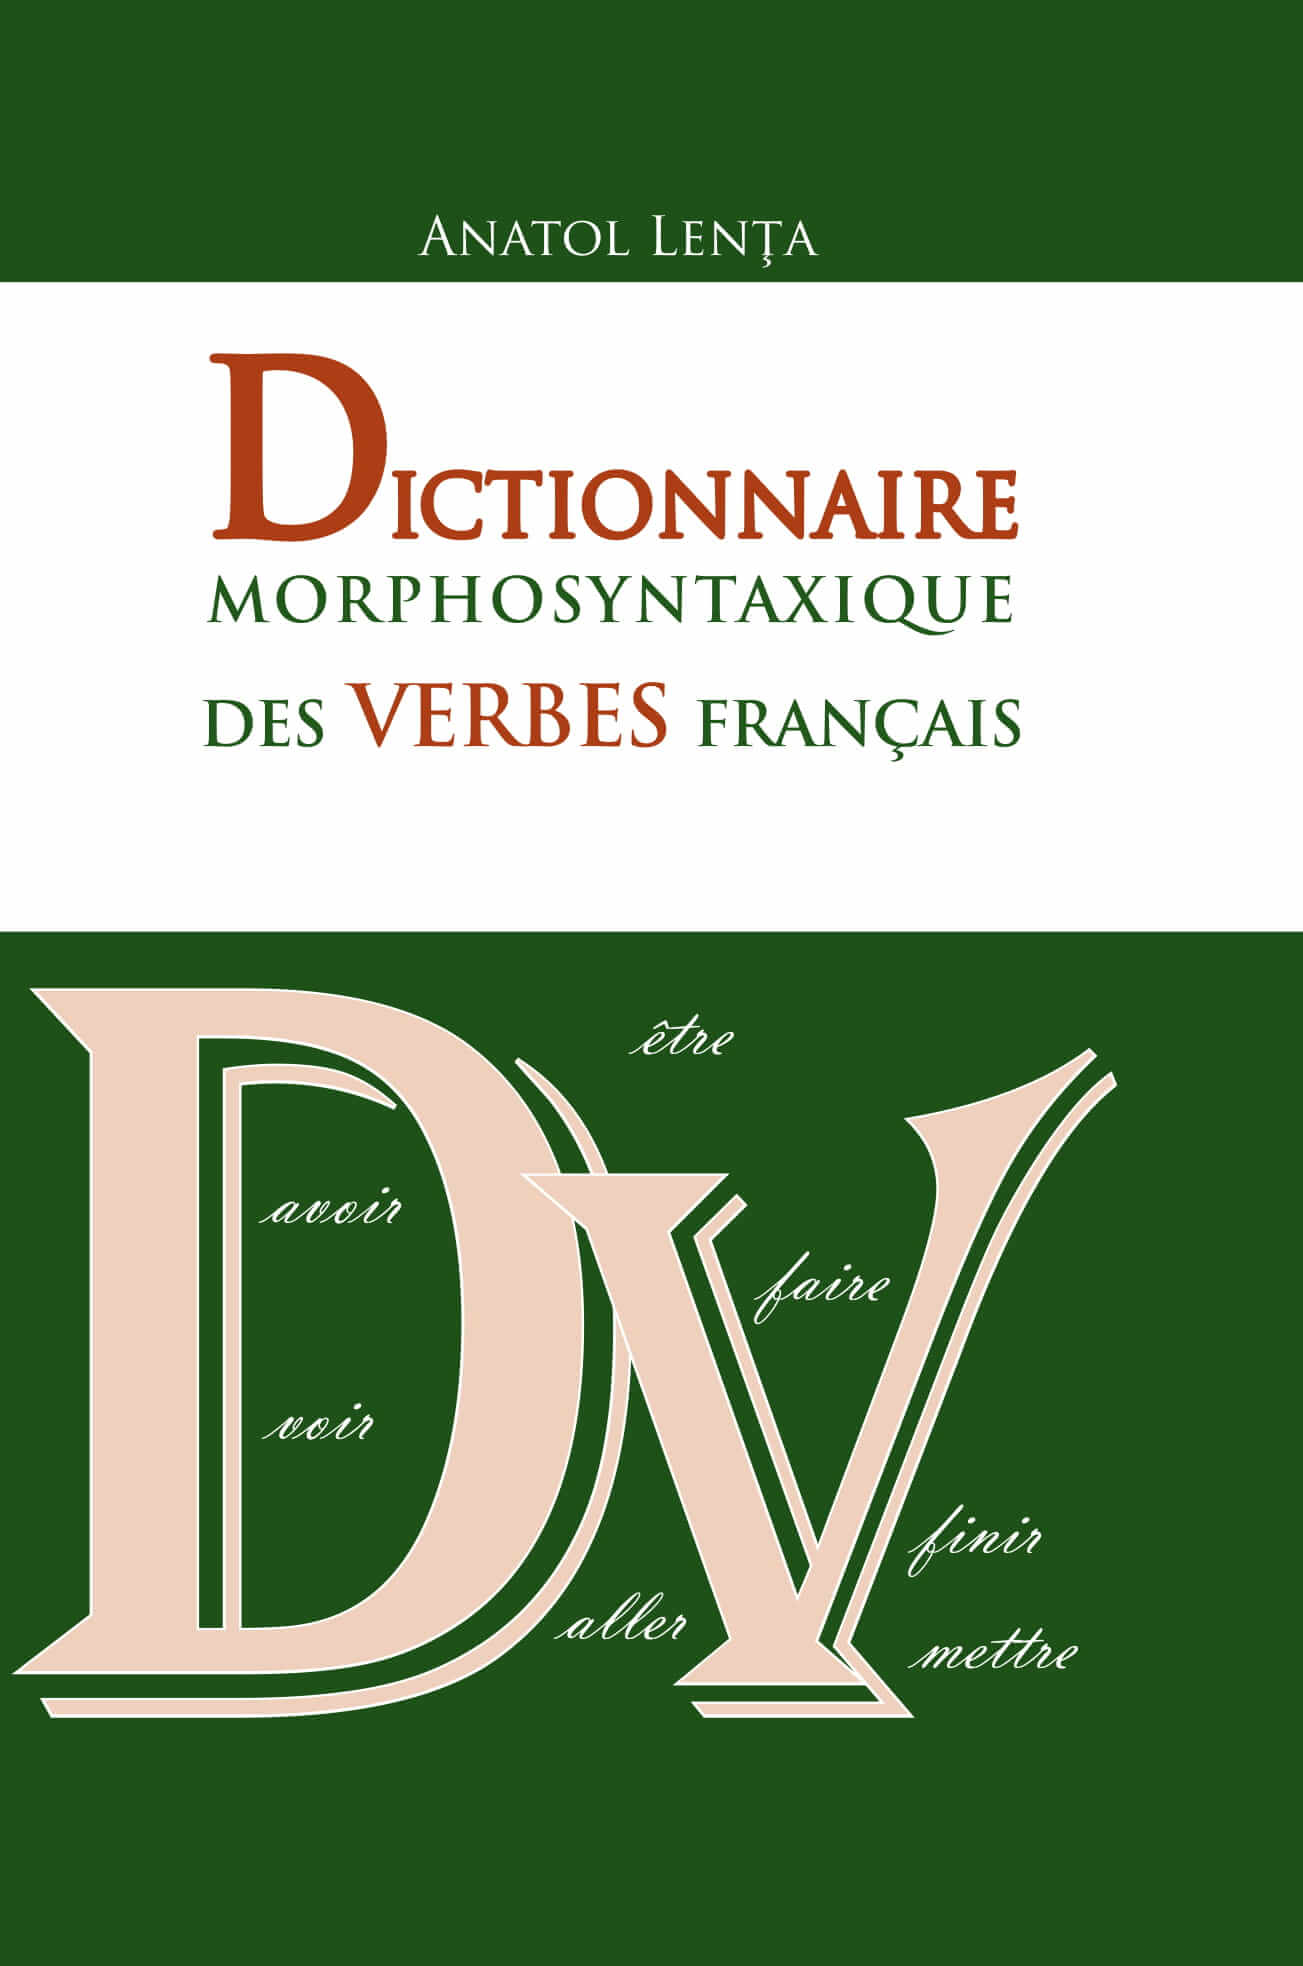 Dictionnaire morphosyntaxique des verbes francais | Anatol Lenta